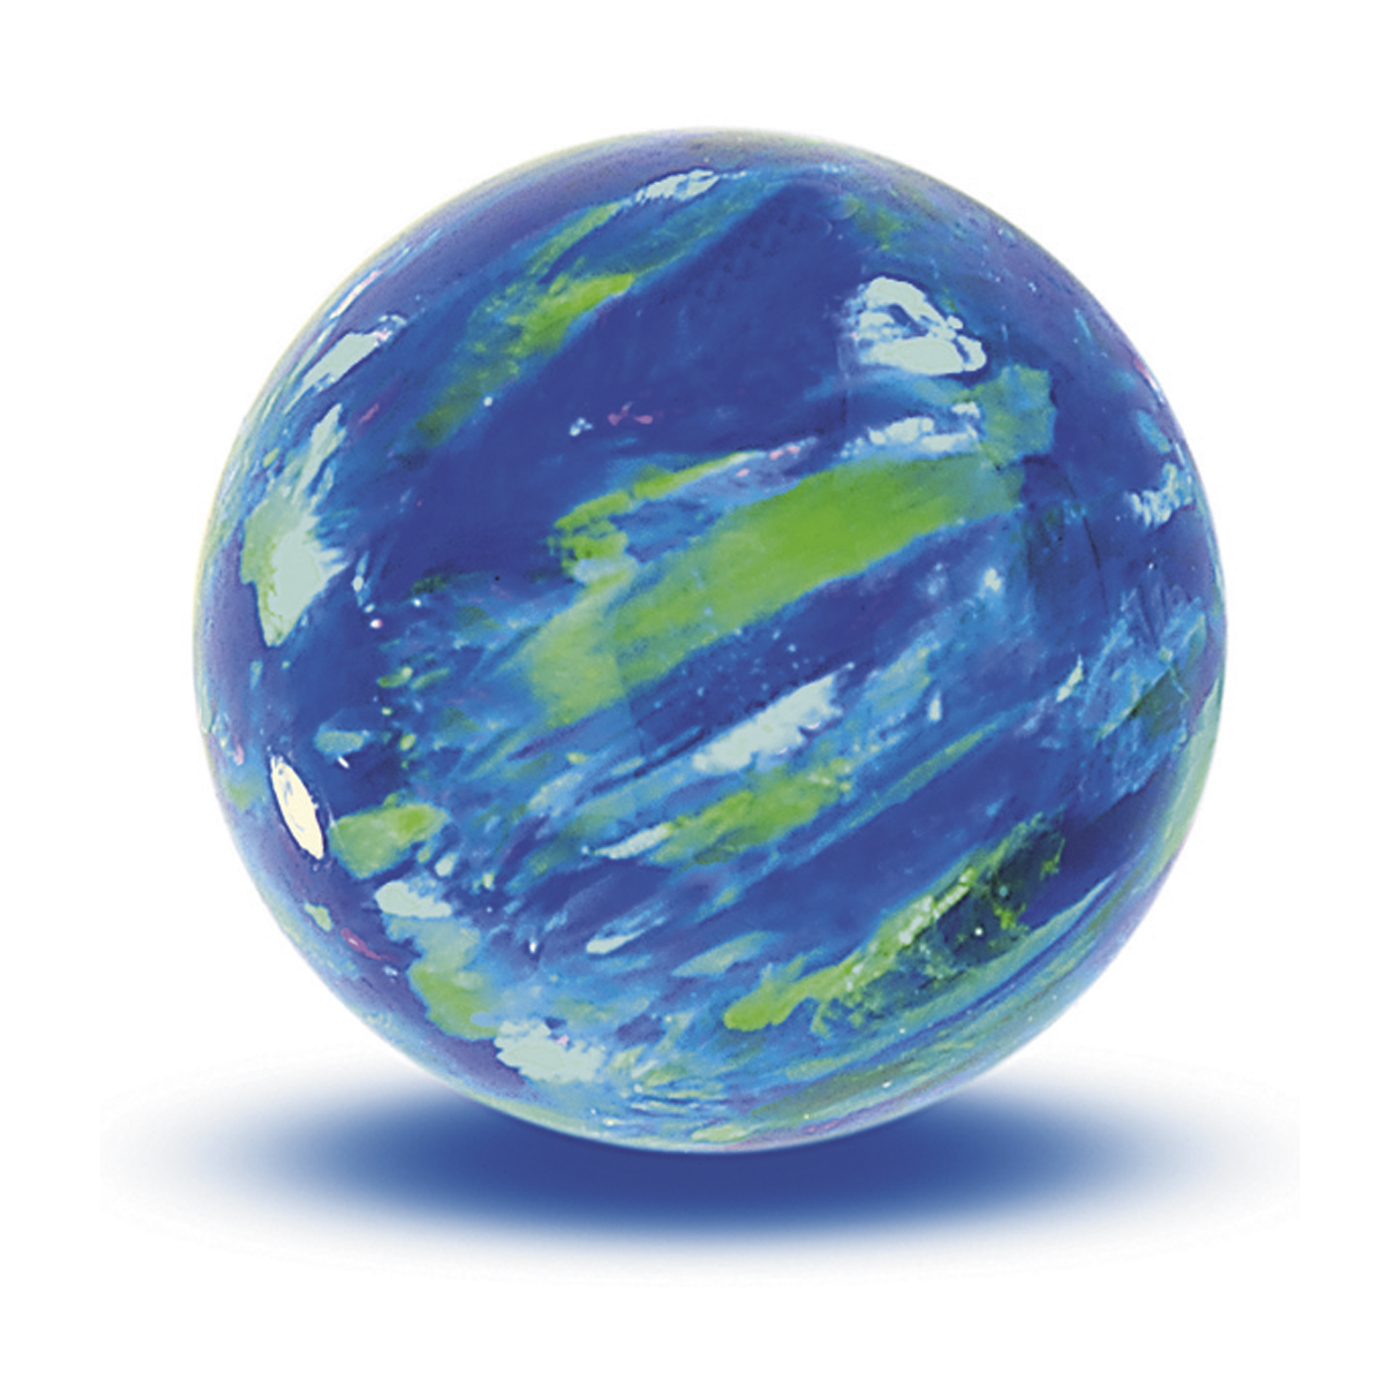 Opal Imitation Ball, Cyan, ø 10 mm, Drilled Through - 1 piece